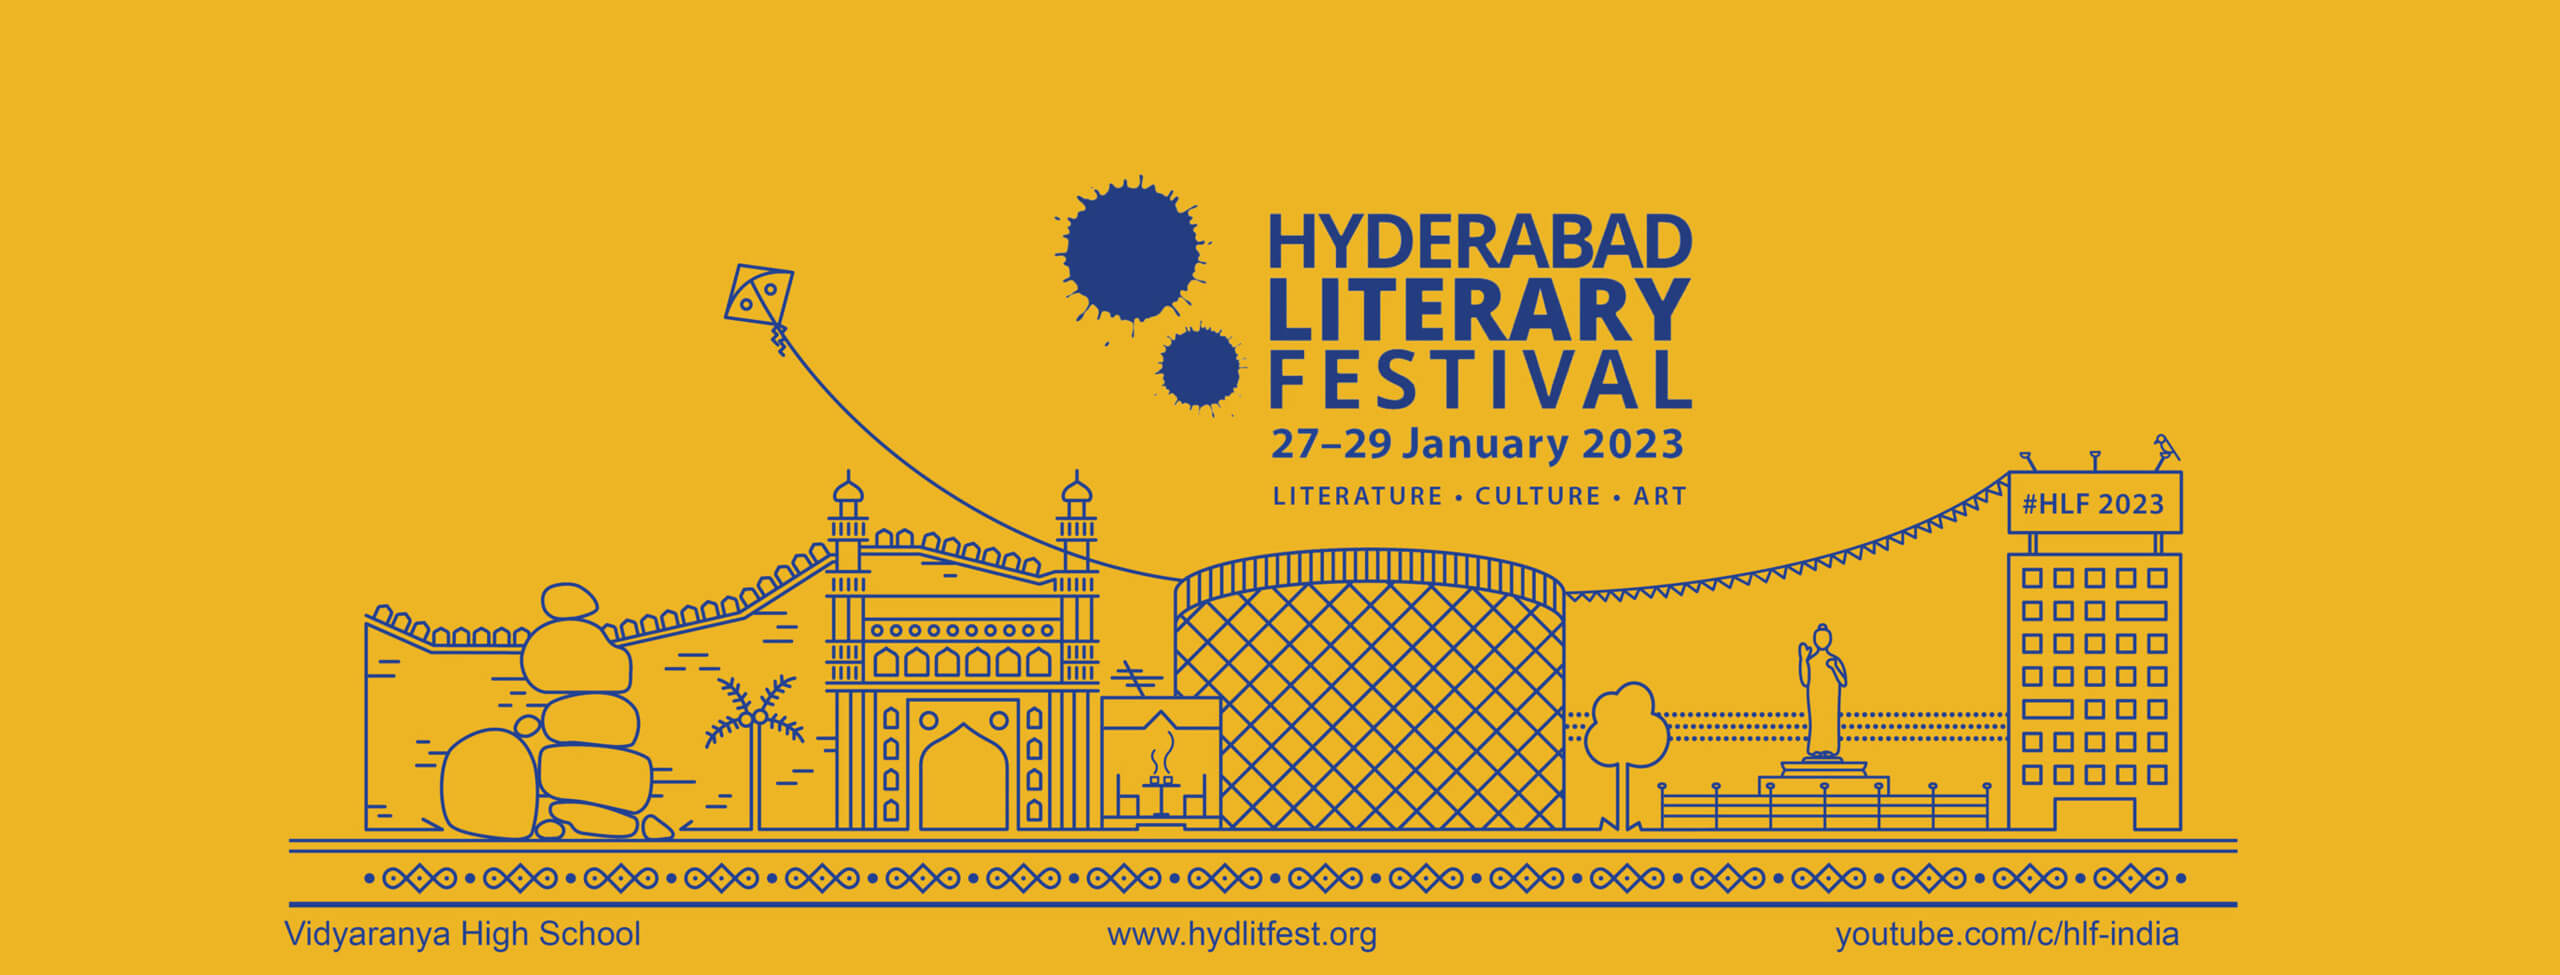 Hyderabad Literary Festival 2023